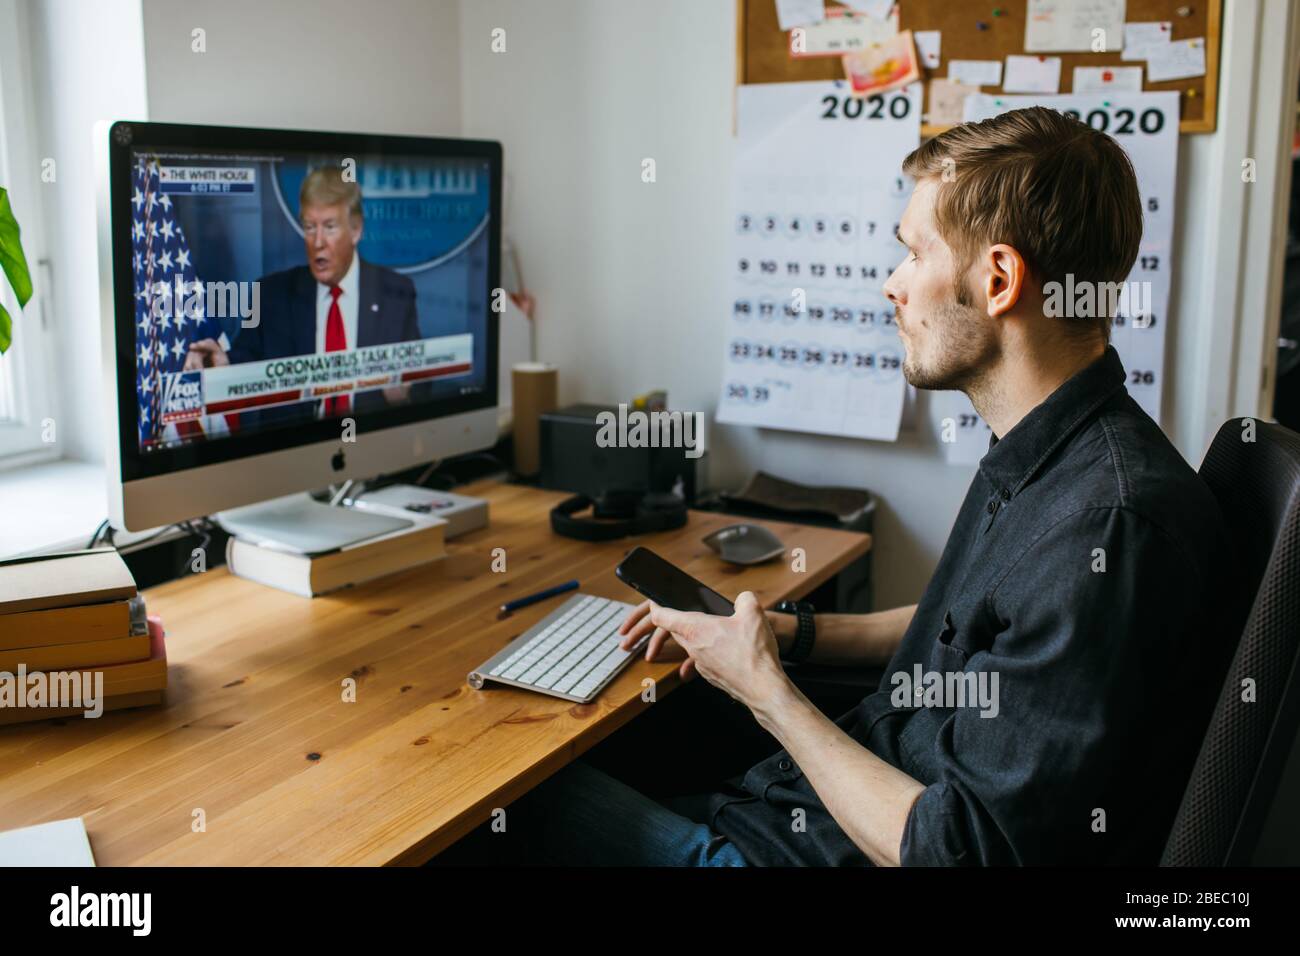 Riga, Lettonie - avril 04 2020: Homme regardant les dernières nouvelles. Le président Donald Trump. États-Unis d'Amérique pendant la pandémie du coronavirus Banque D'Images